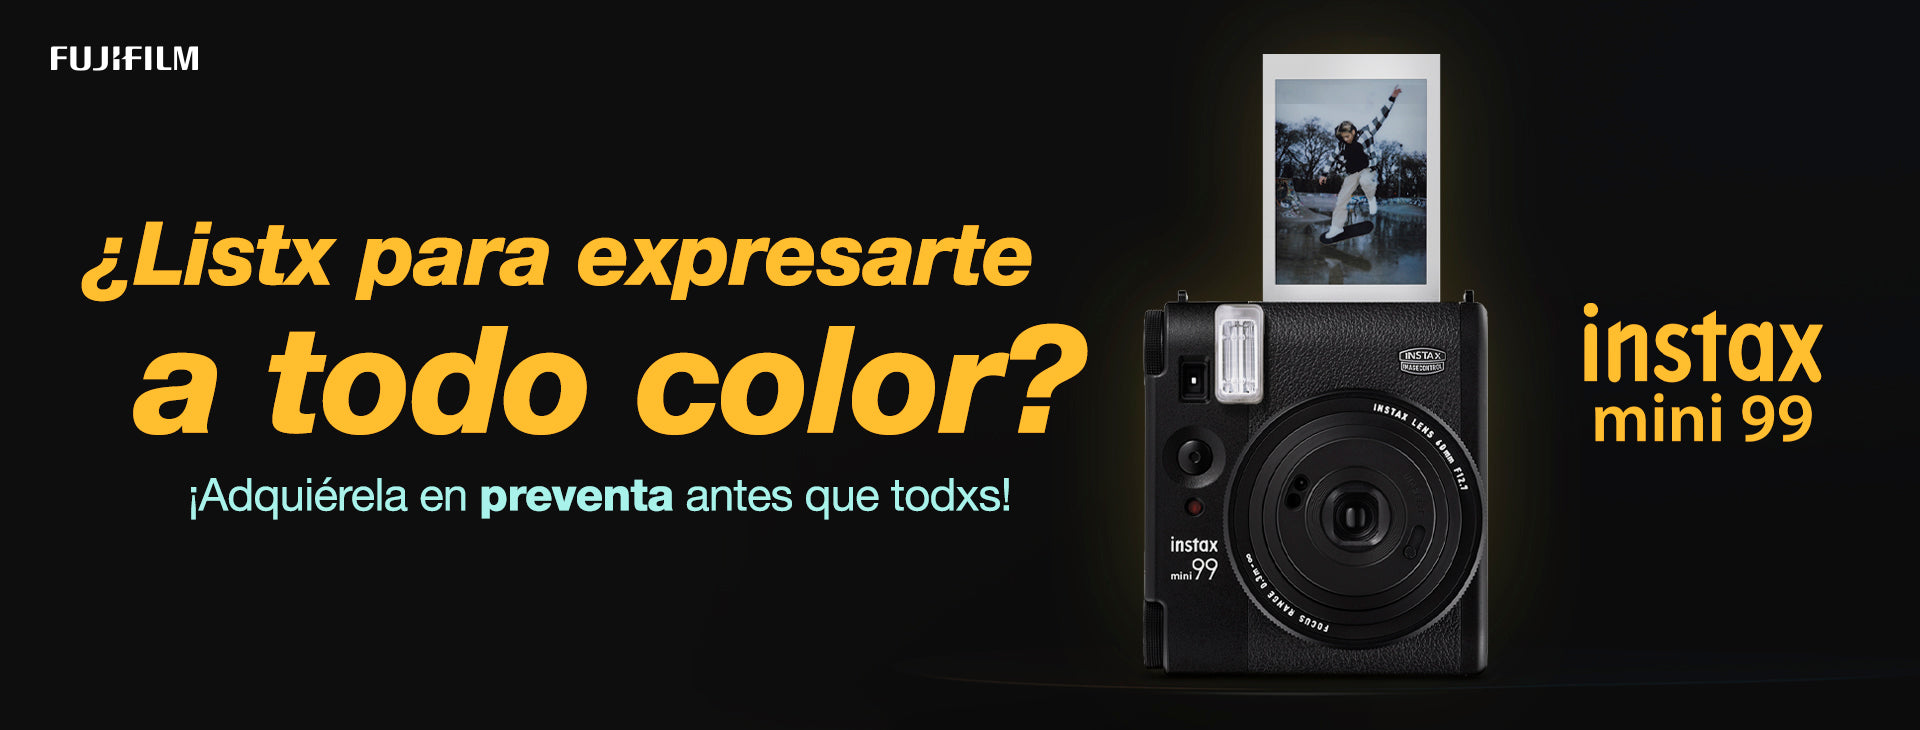 Errores que cometemos con las instantáneas – Instax - Tienda Fujifilm México